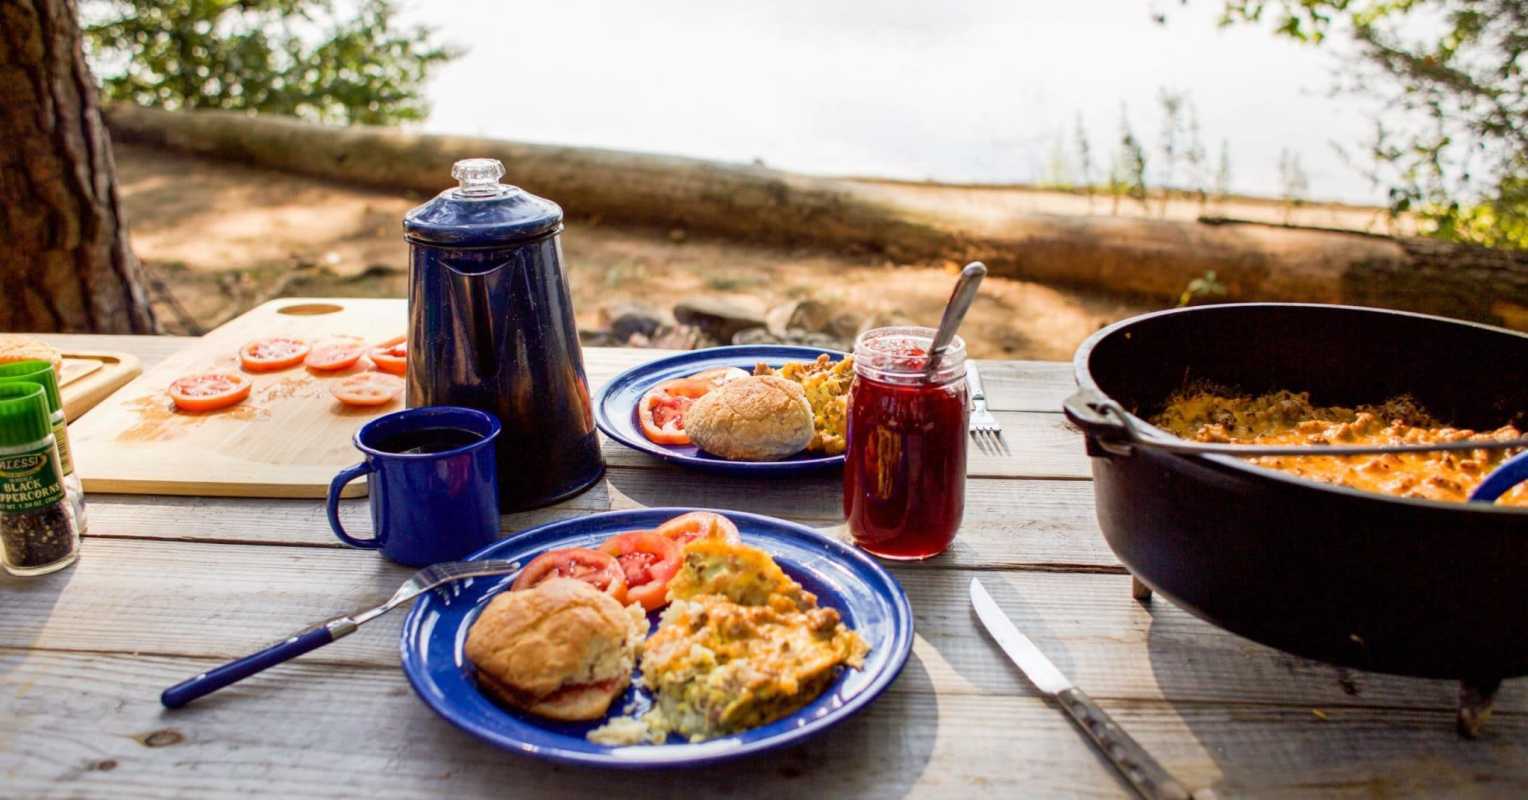 Khung cảnh cắm trại với ấm cà phê, đĩa màu xanh lam đựng bữa sáng bằng trứng và lò nướng kiểu Hà Lan trong khung